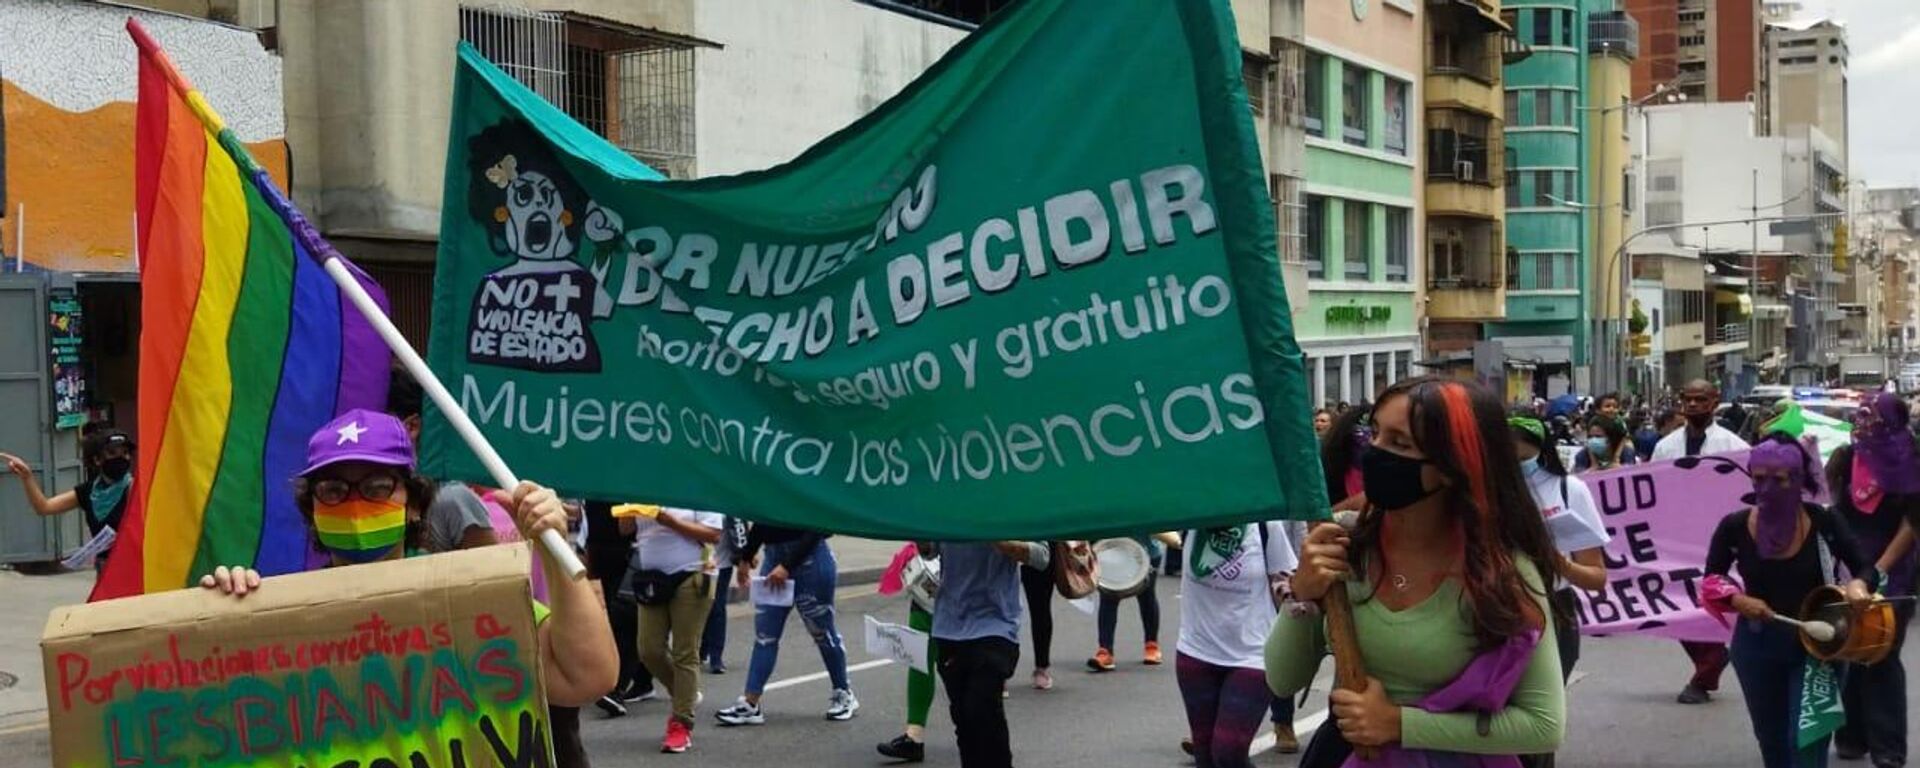 Organizaciones feministas marcharon por el centro de la capital venezolana por un aborto legal y seguro - Sputnik Mundo, 1920, 28.09.2021